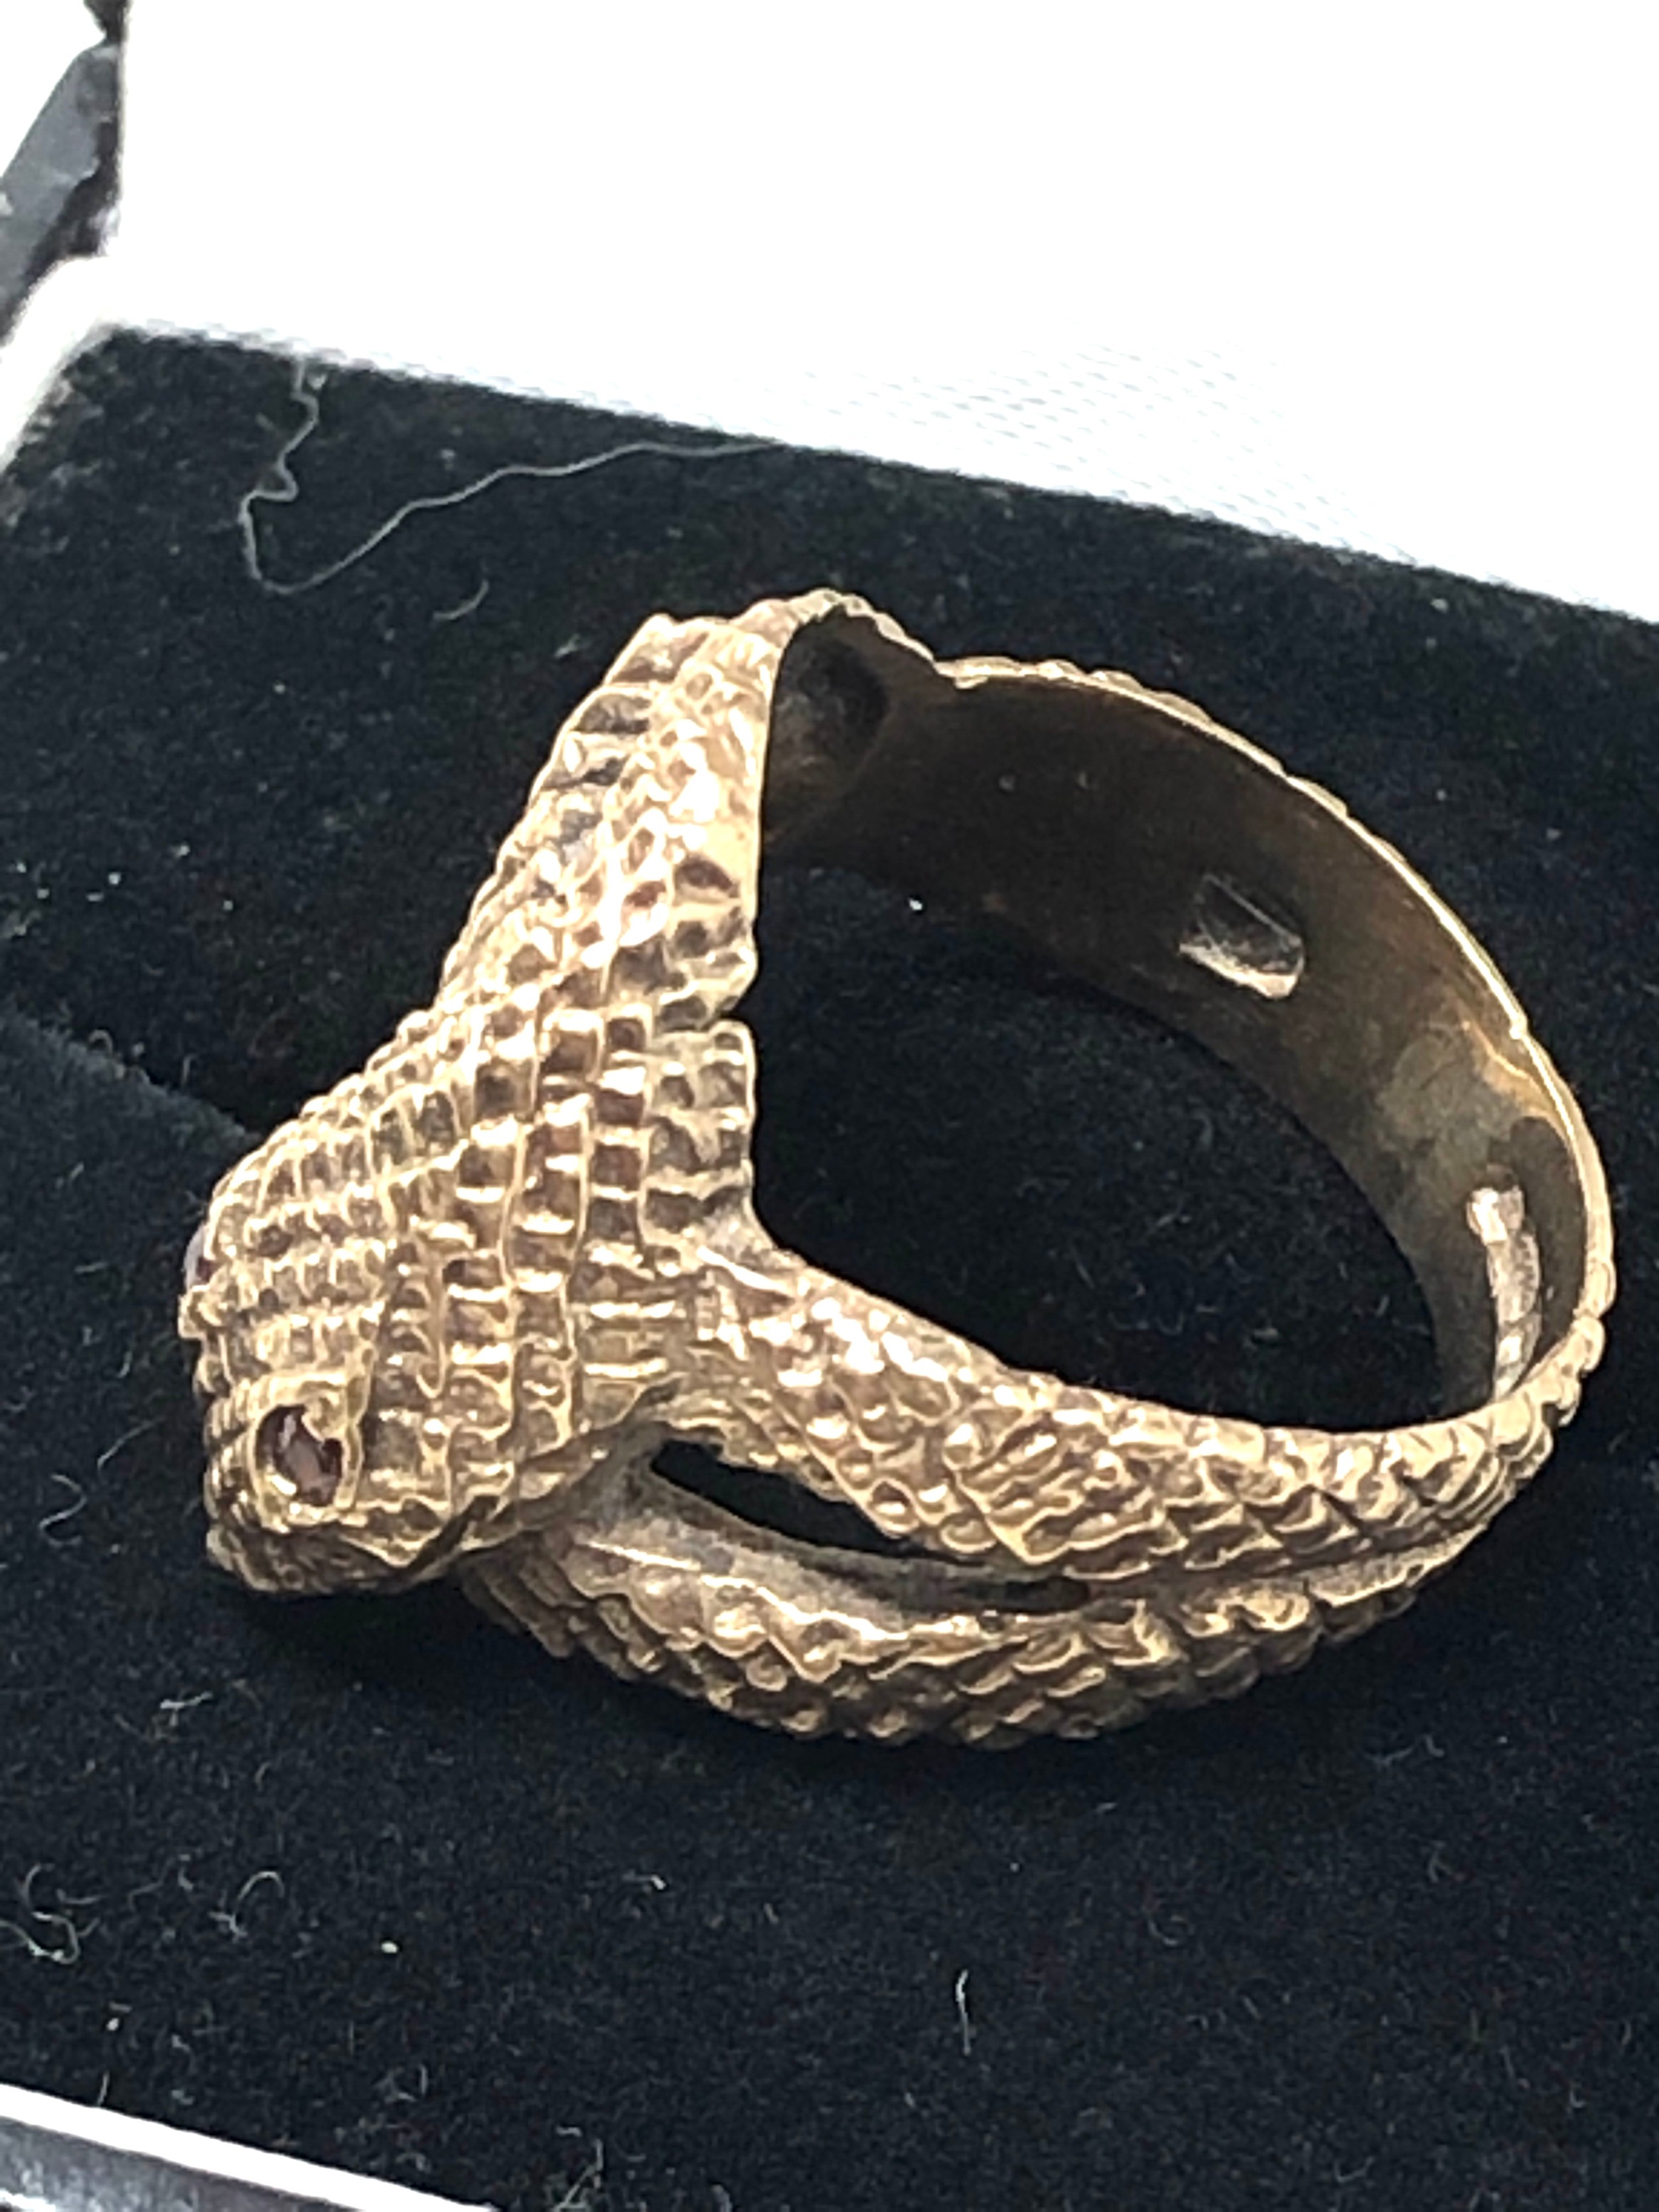 9ct gold vintage garnet eyes snake coil ring (5.1g) - Image 2 of 3